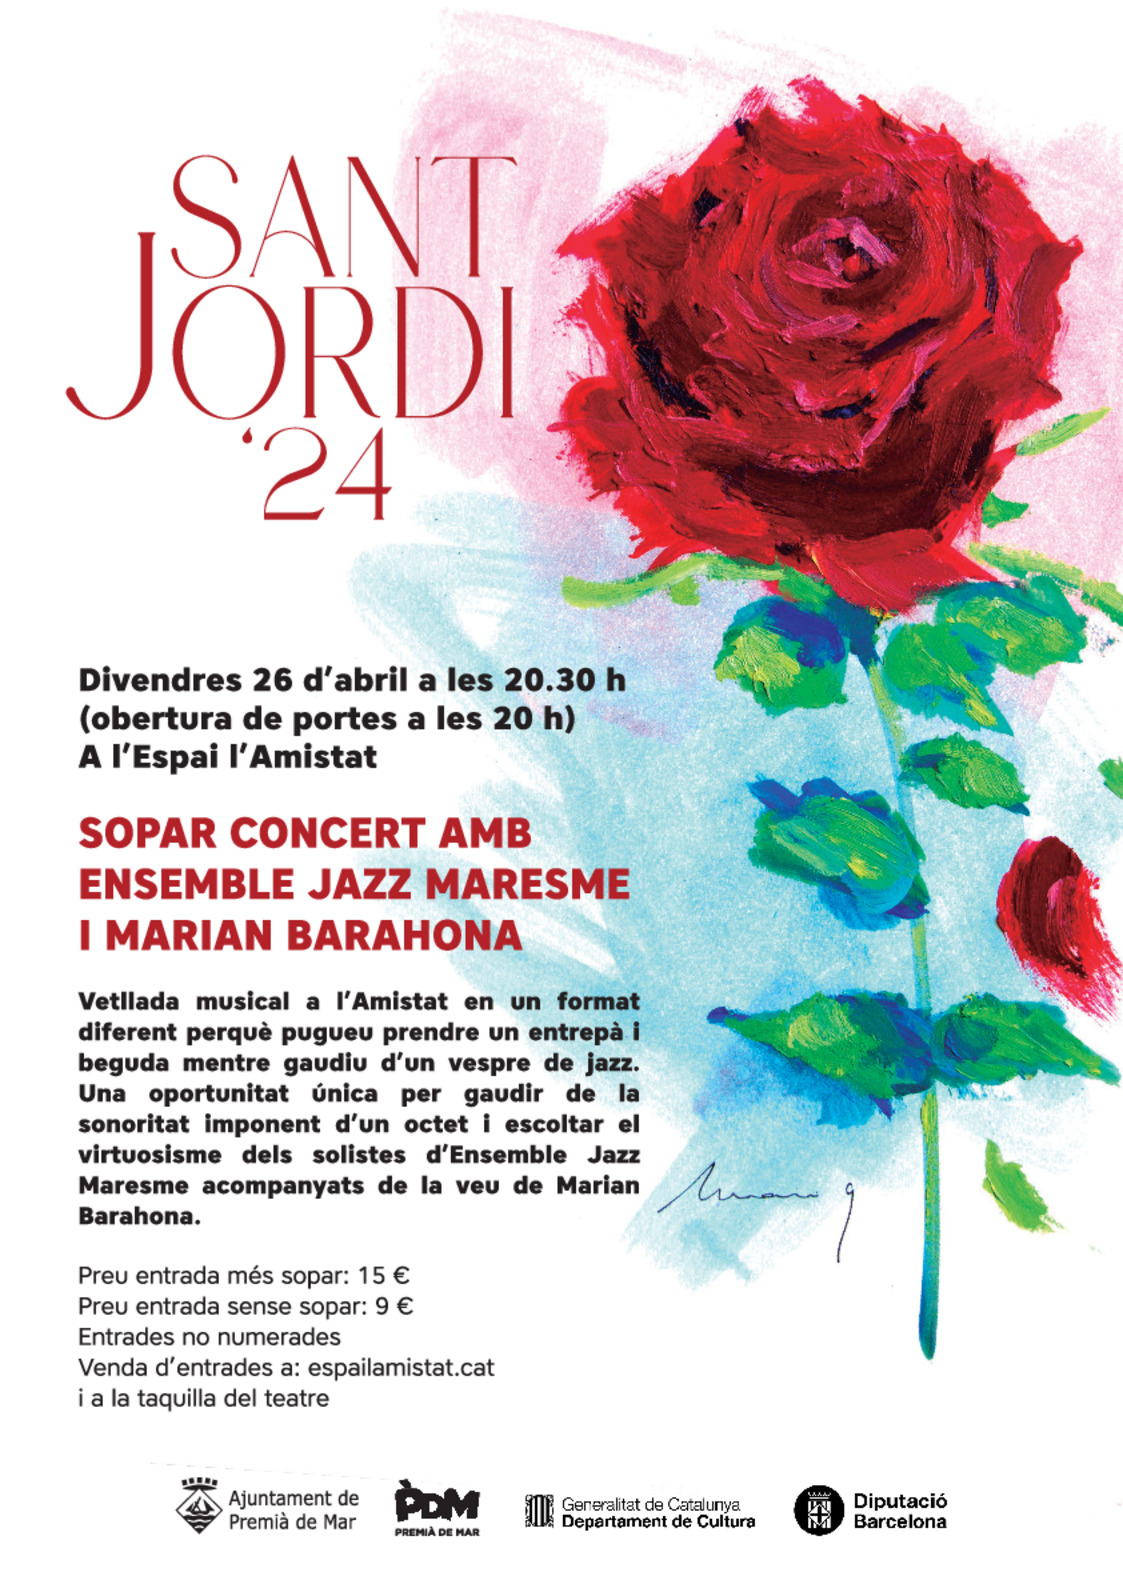 Sopar concert amb Ensemble Jazz Maresme i Marian Barahona